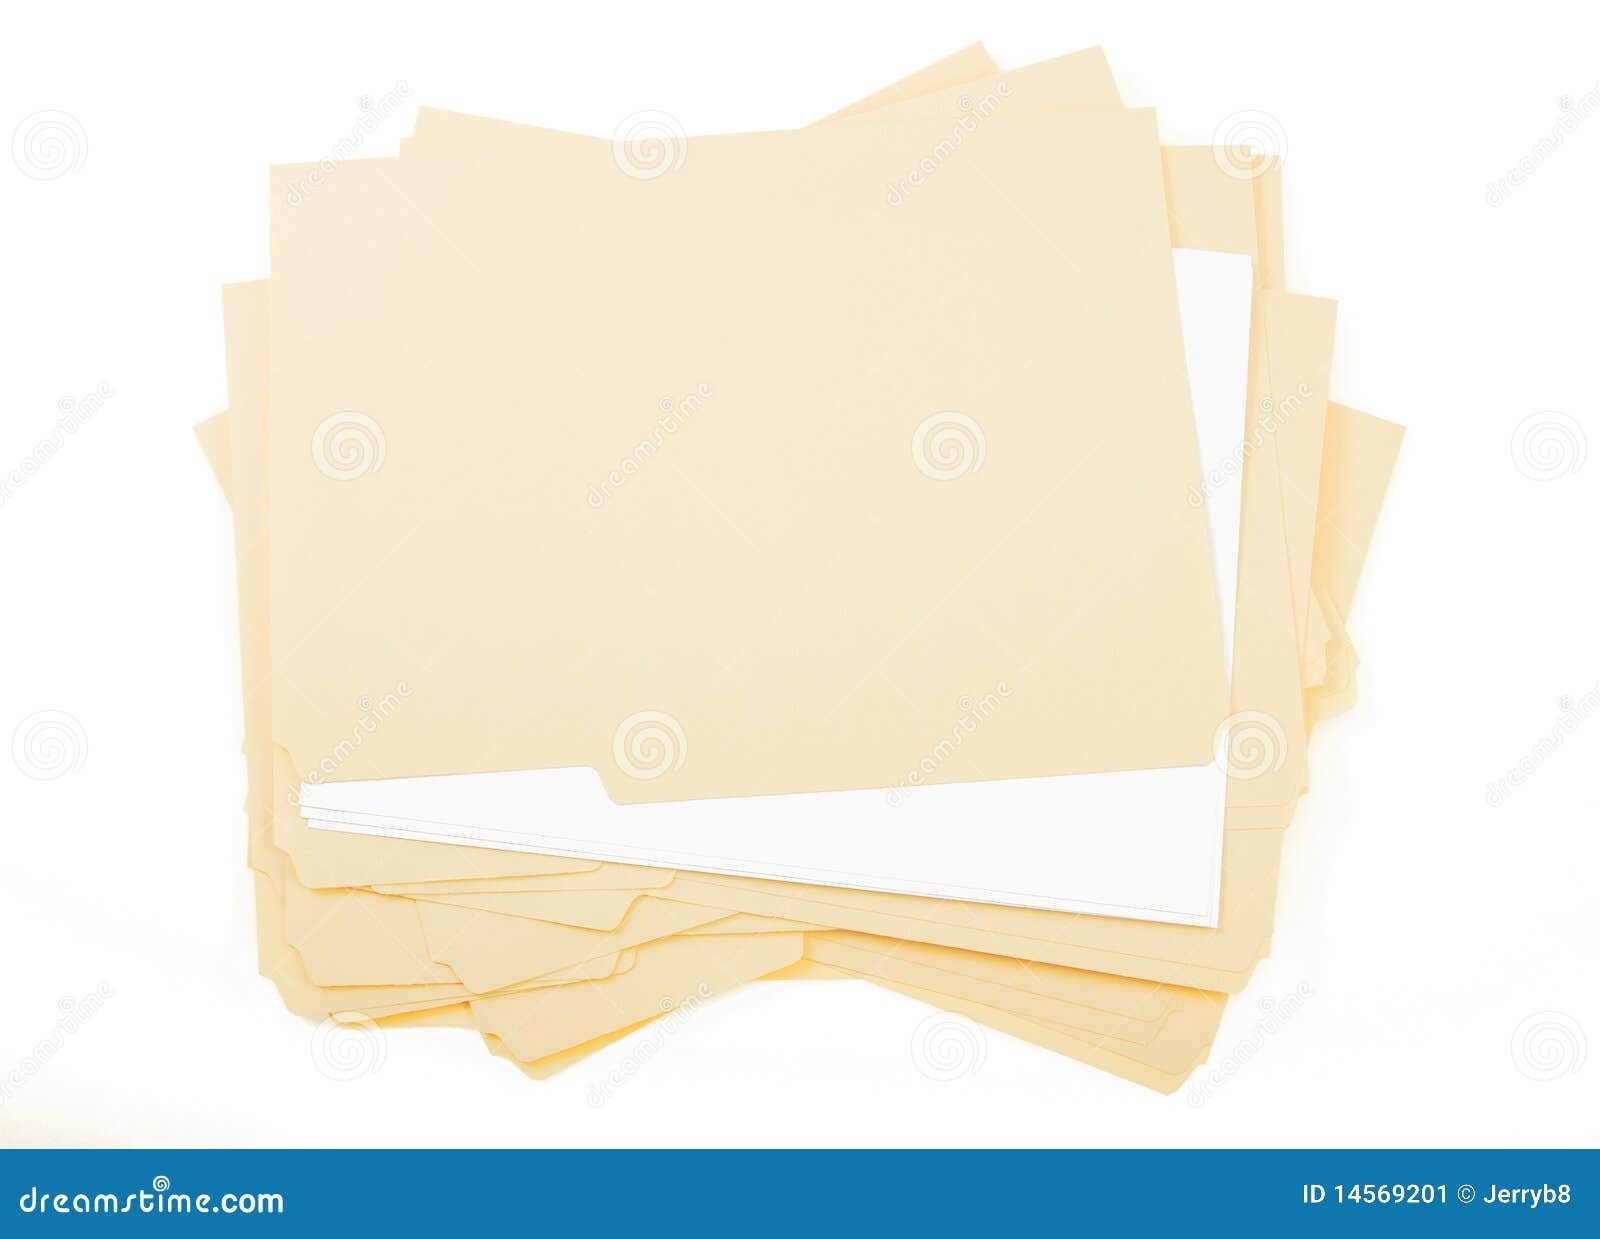 pile of blank brown folders